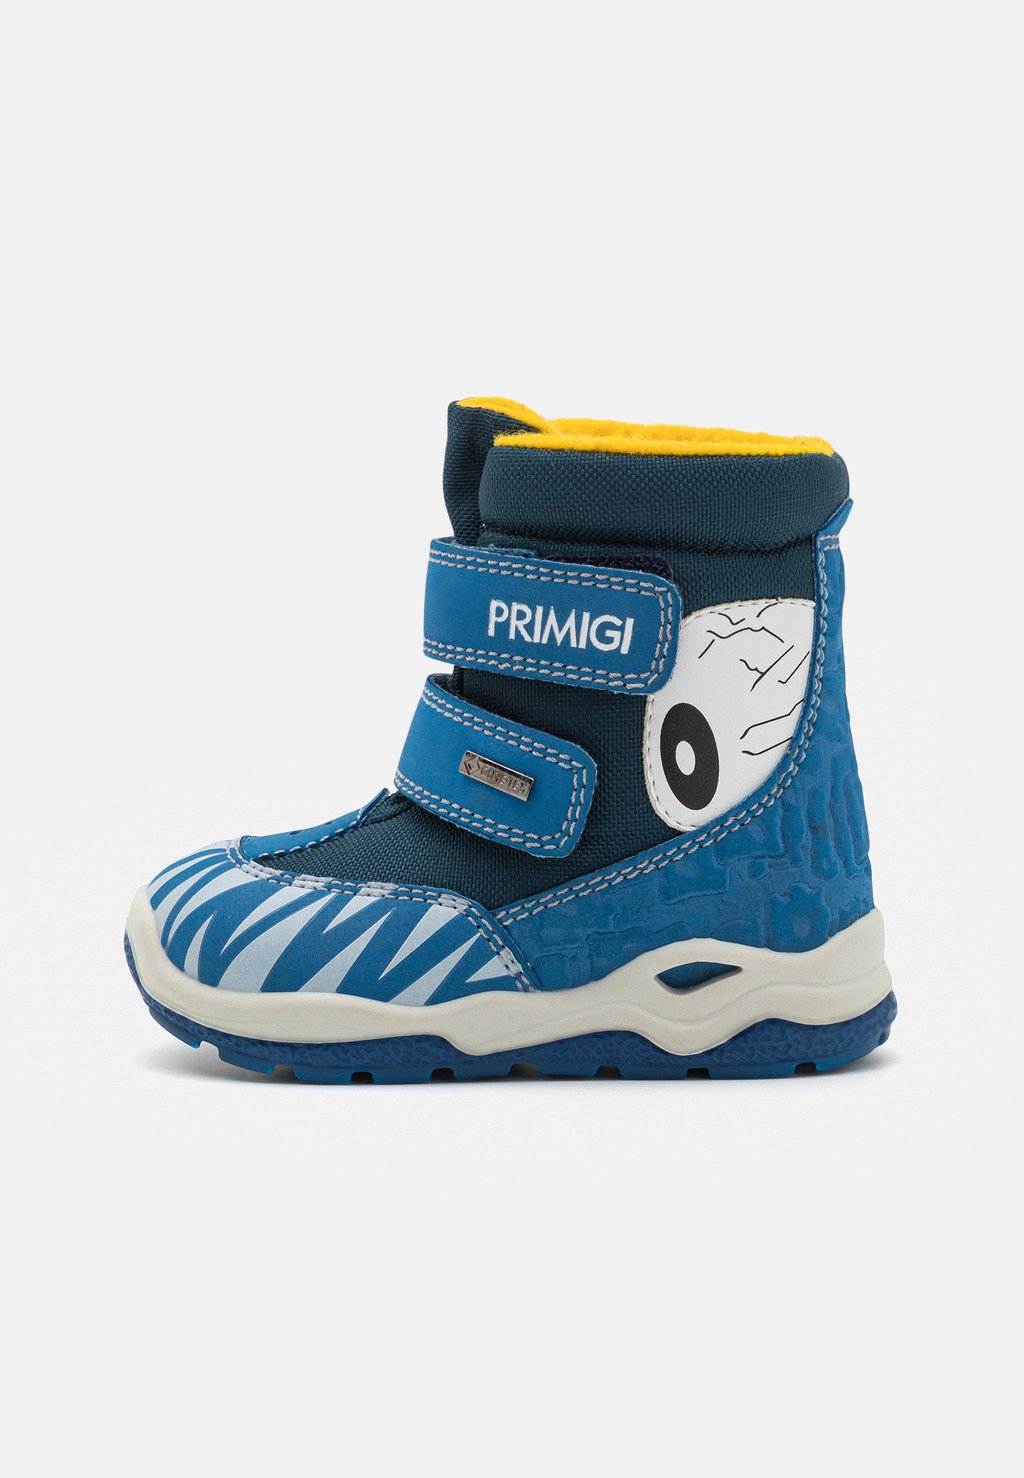 Снежные/зимние ботинки PGYGT 48602 Primigi, цвет oceano/petrolio